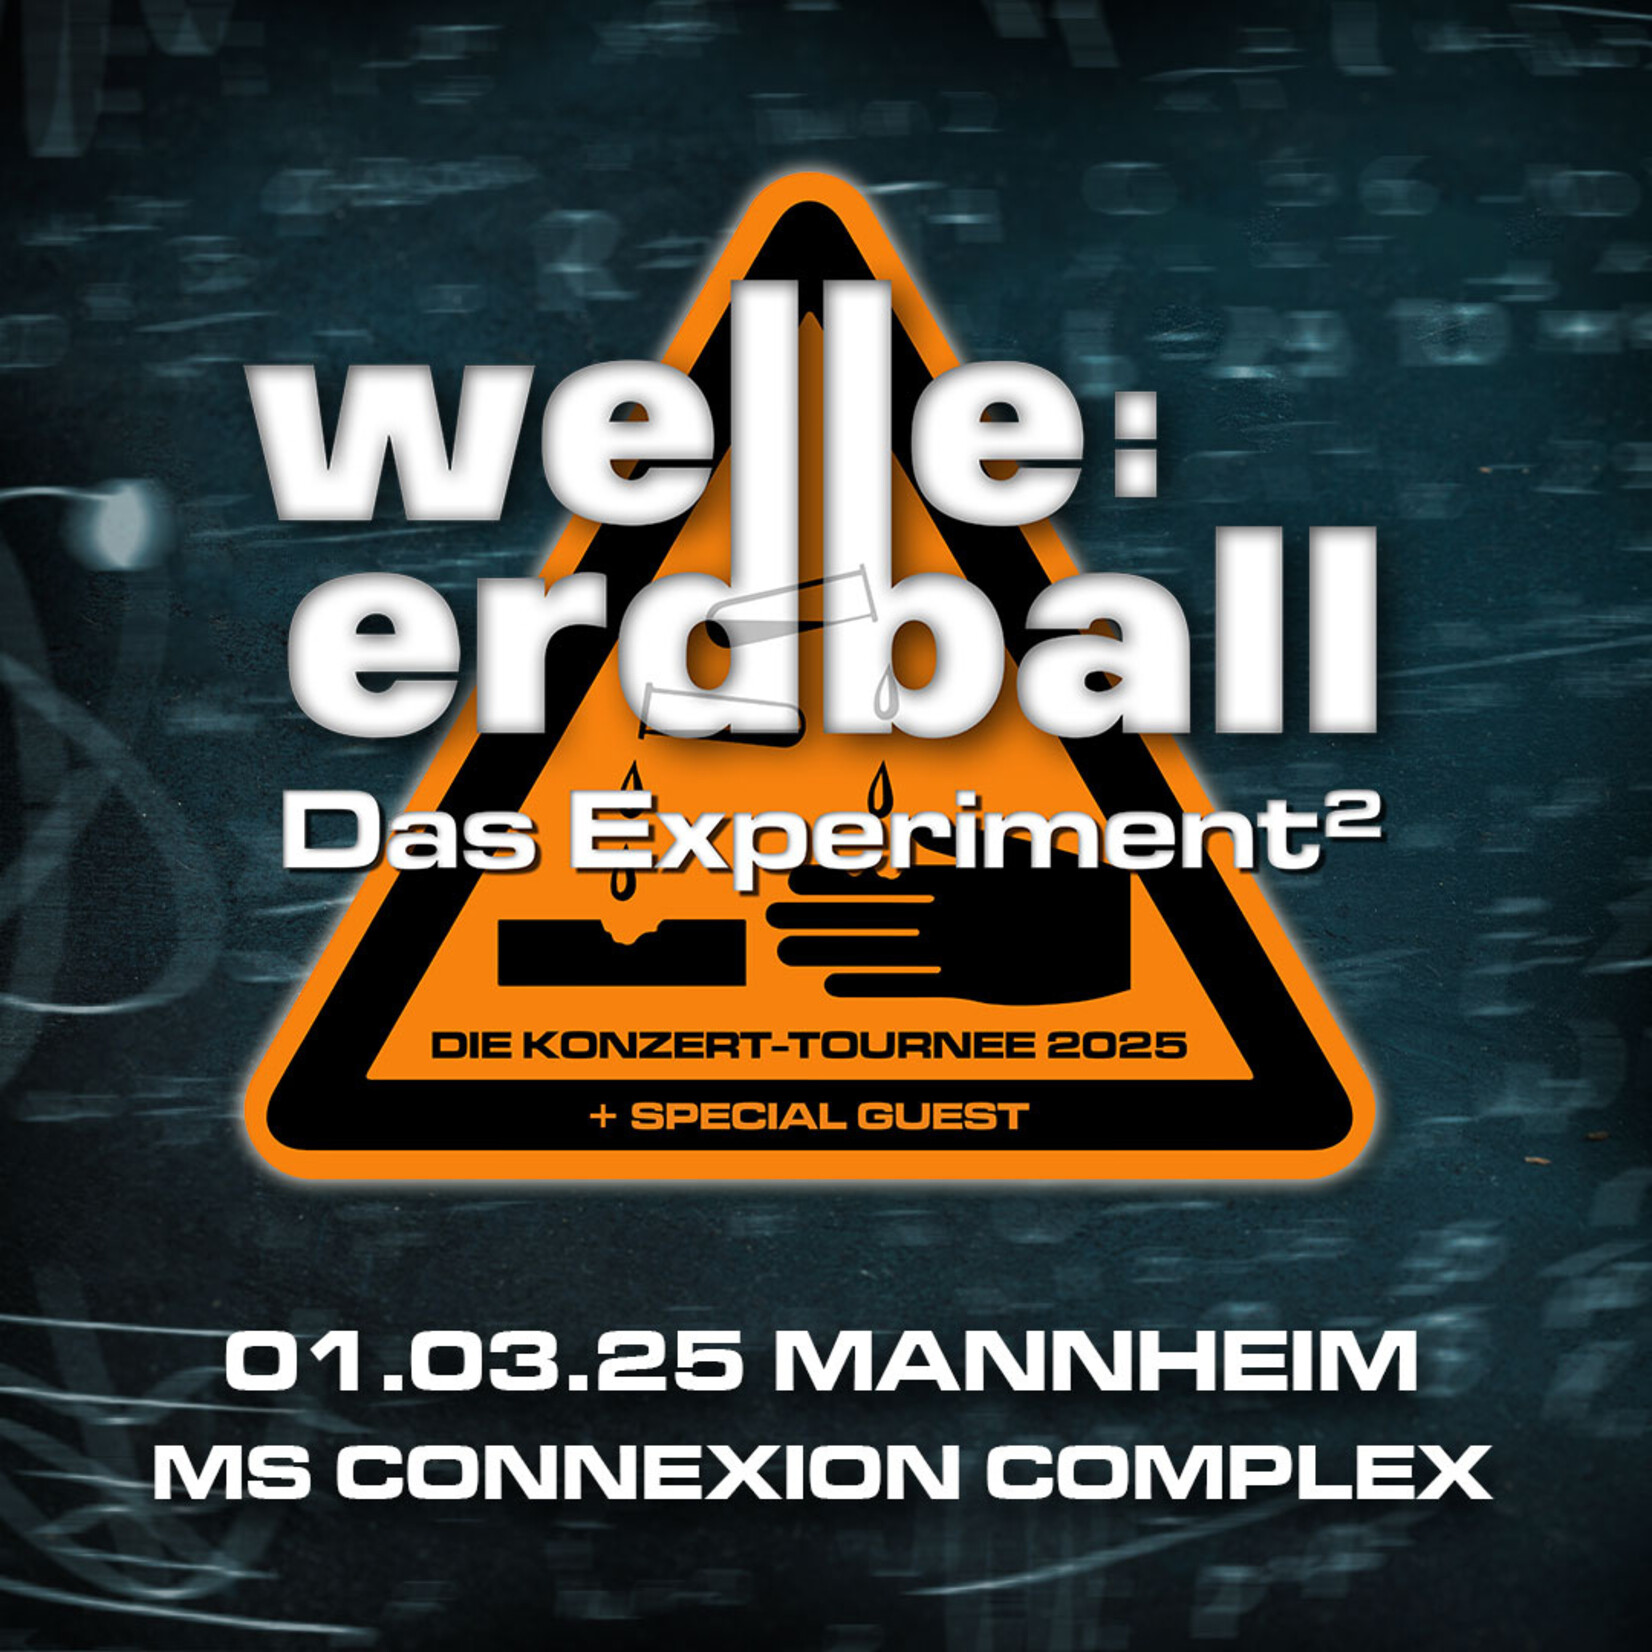 01.03.2025 - MANNHEIM - WELLE:ERDBALL - DAS EXPERIMENT²